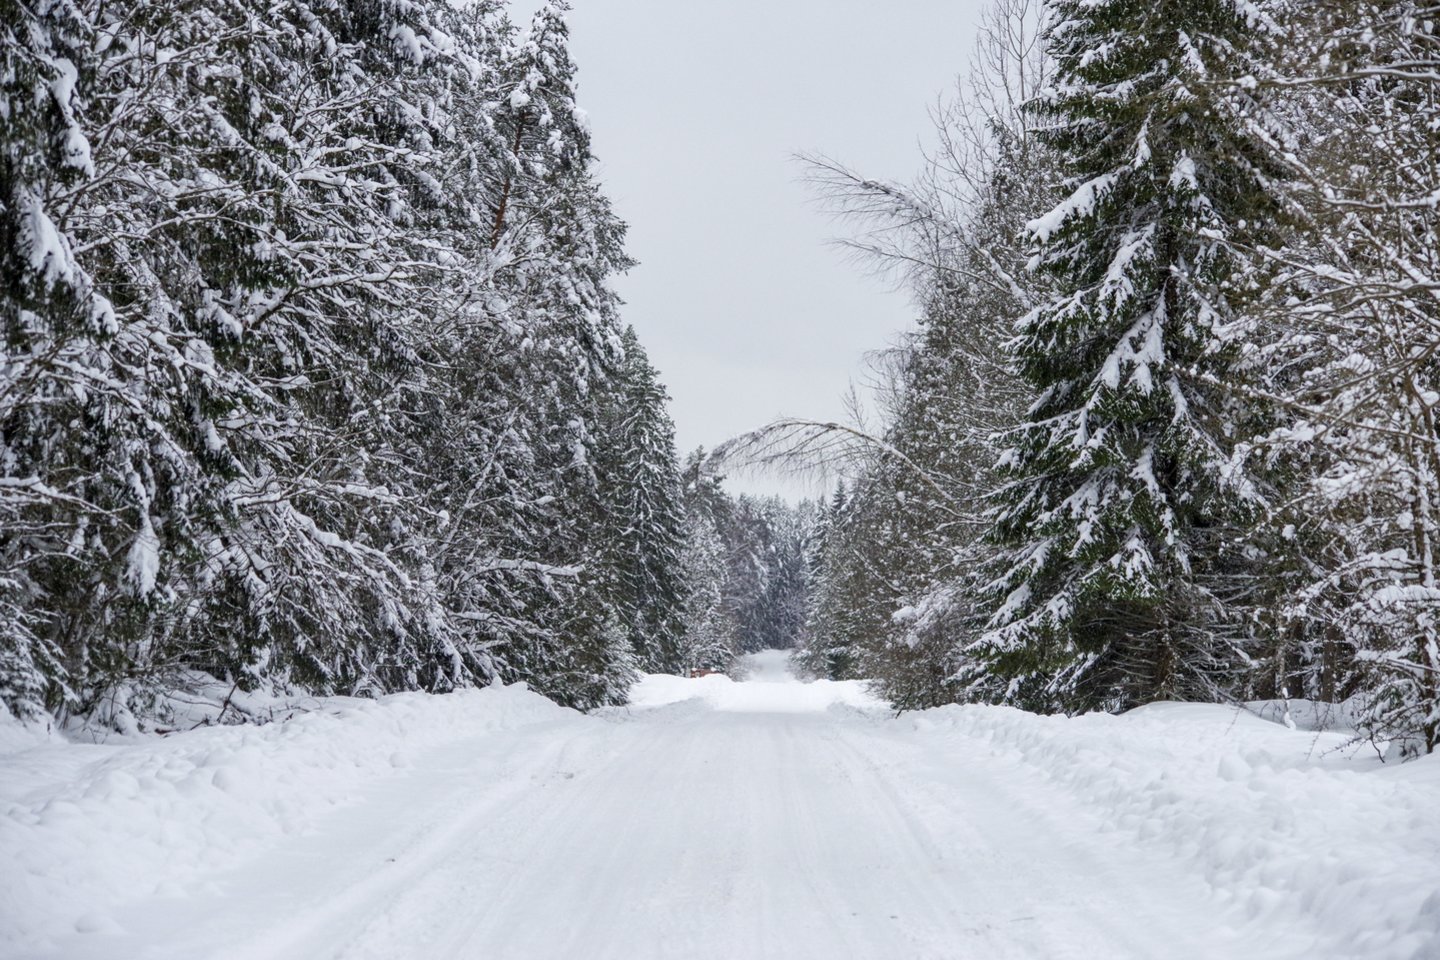 Didžiojoje Lietuvos dalyje sninga ir pusto, todėl eismo sąlygos sudėtingos.<br>V.Ščiavinsko nuotr.